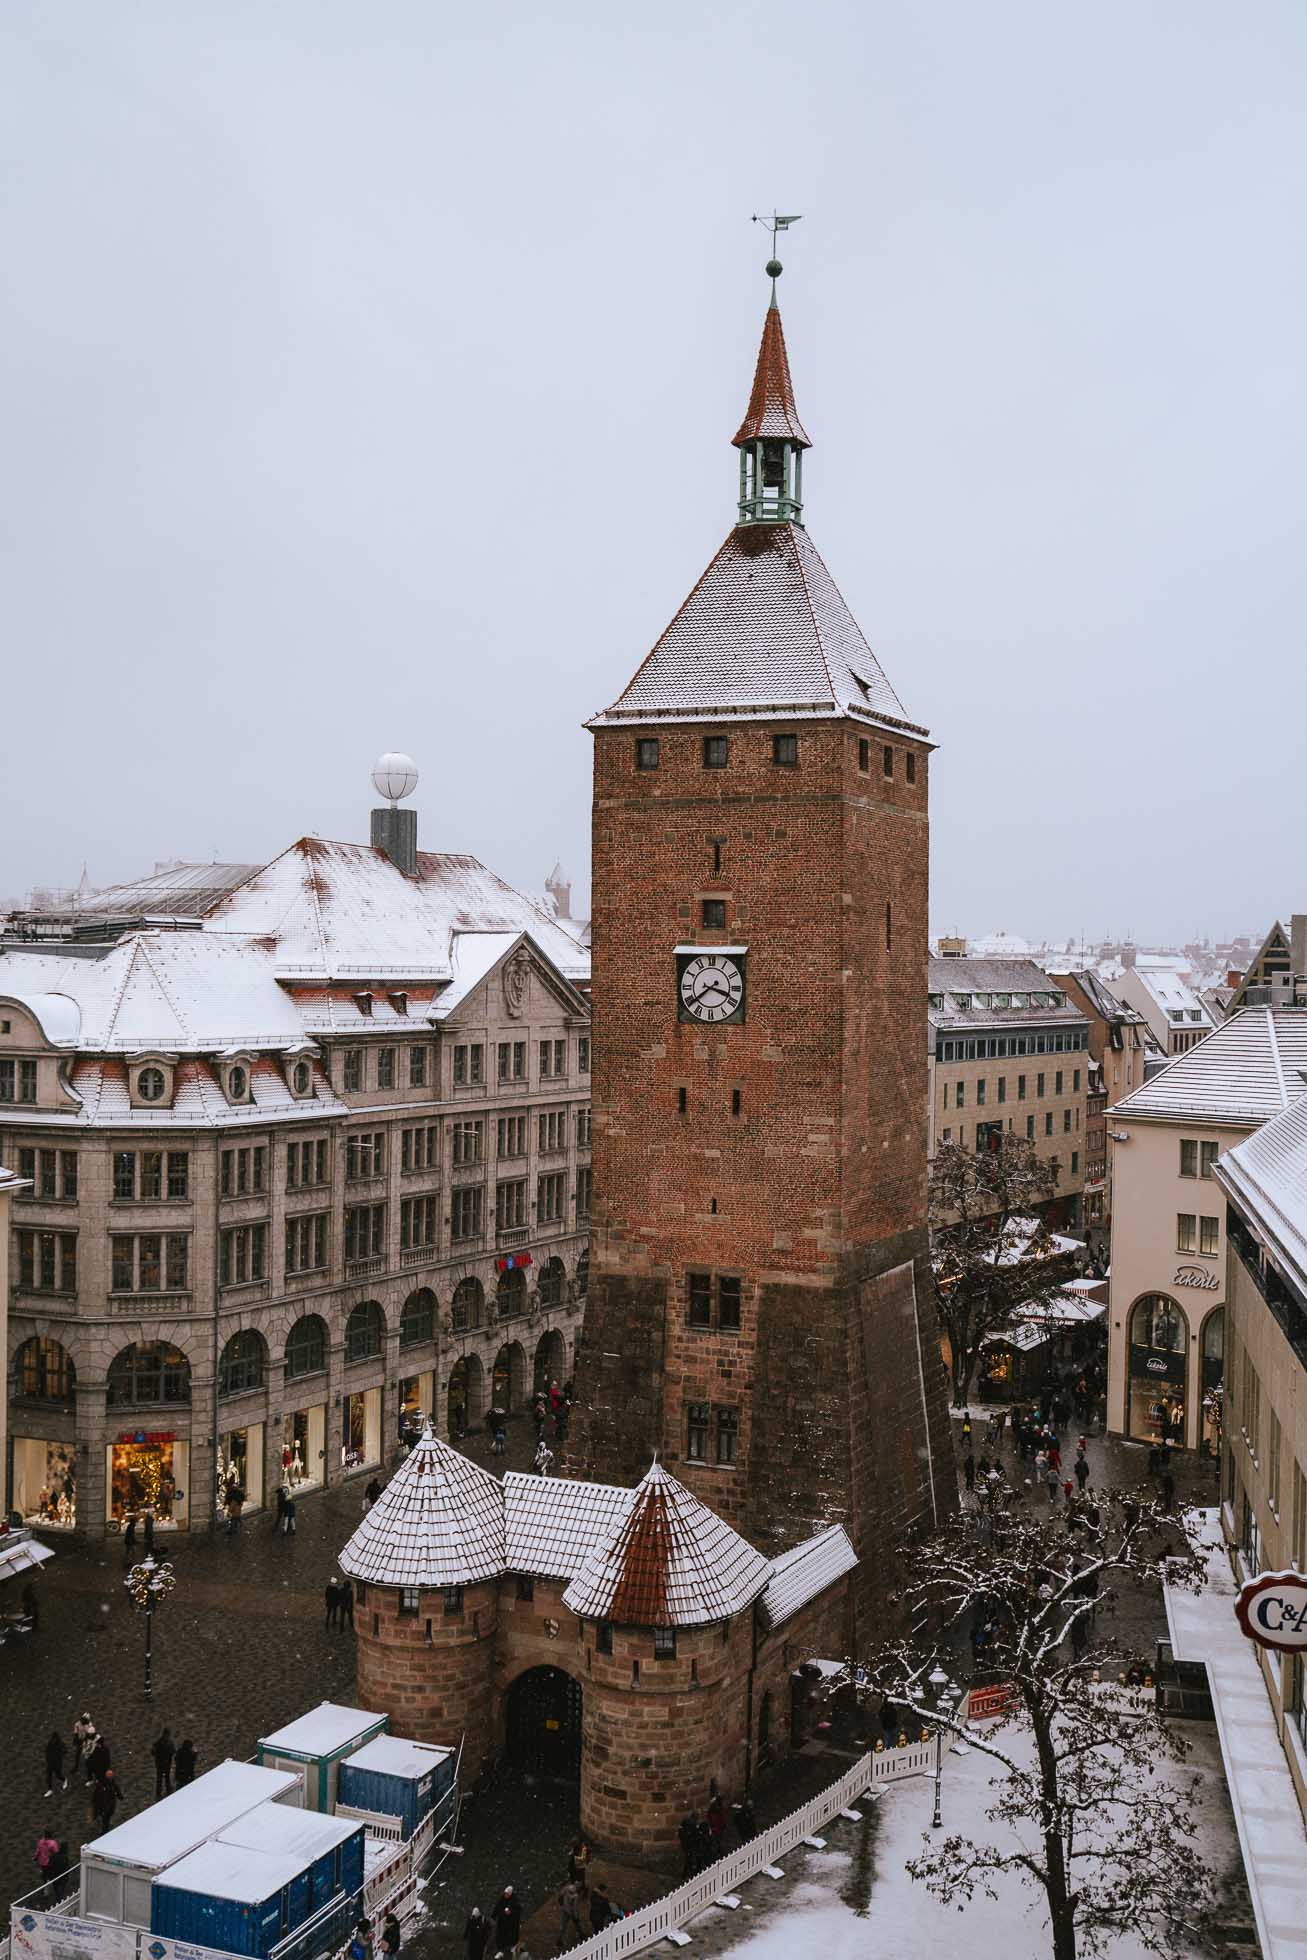 Algo que ver en Nuremberg en Navidad, es esta histórica torre del siglo XIII que en su momento formó parte de las murallas de la ciudad.